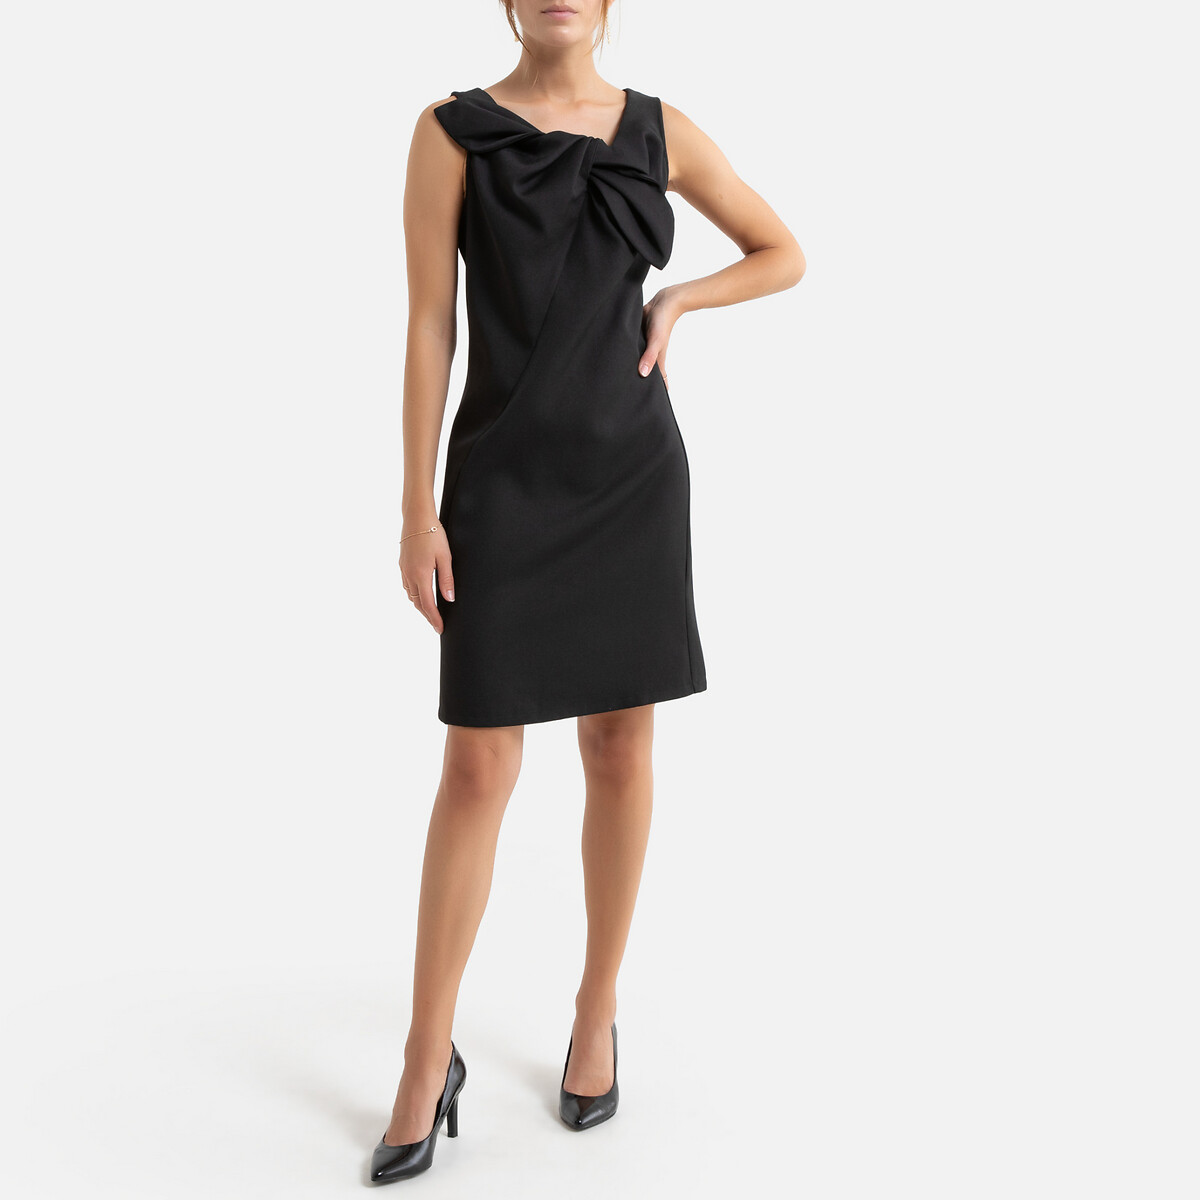 Платье La Redoute Короткое расклешенное бантик спереди XS черный, размер XS - фото 2